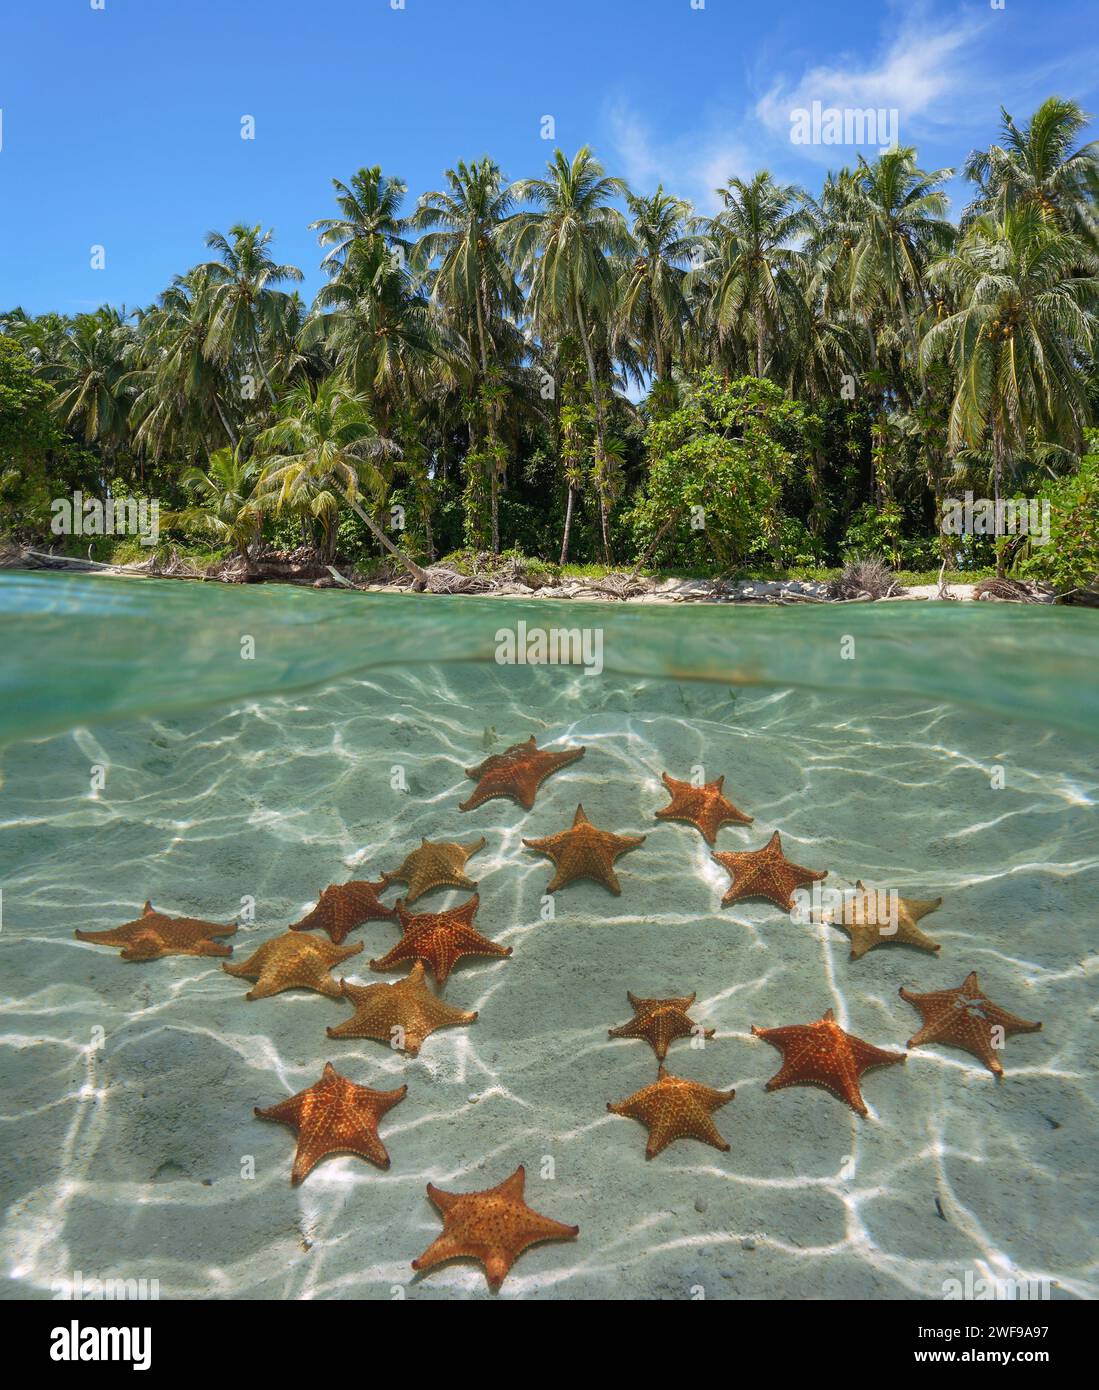 Stelle marine sott'acqua su un fondale sabbioso e una costa tropicale con palme, mare caraibico, vista a metà sopra e sotto la superficie dell'acqua, Panama Foto Stock